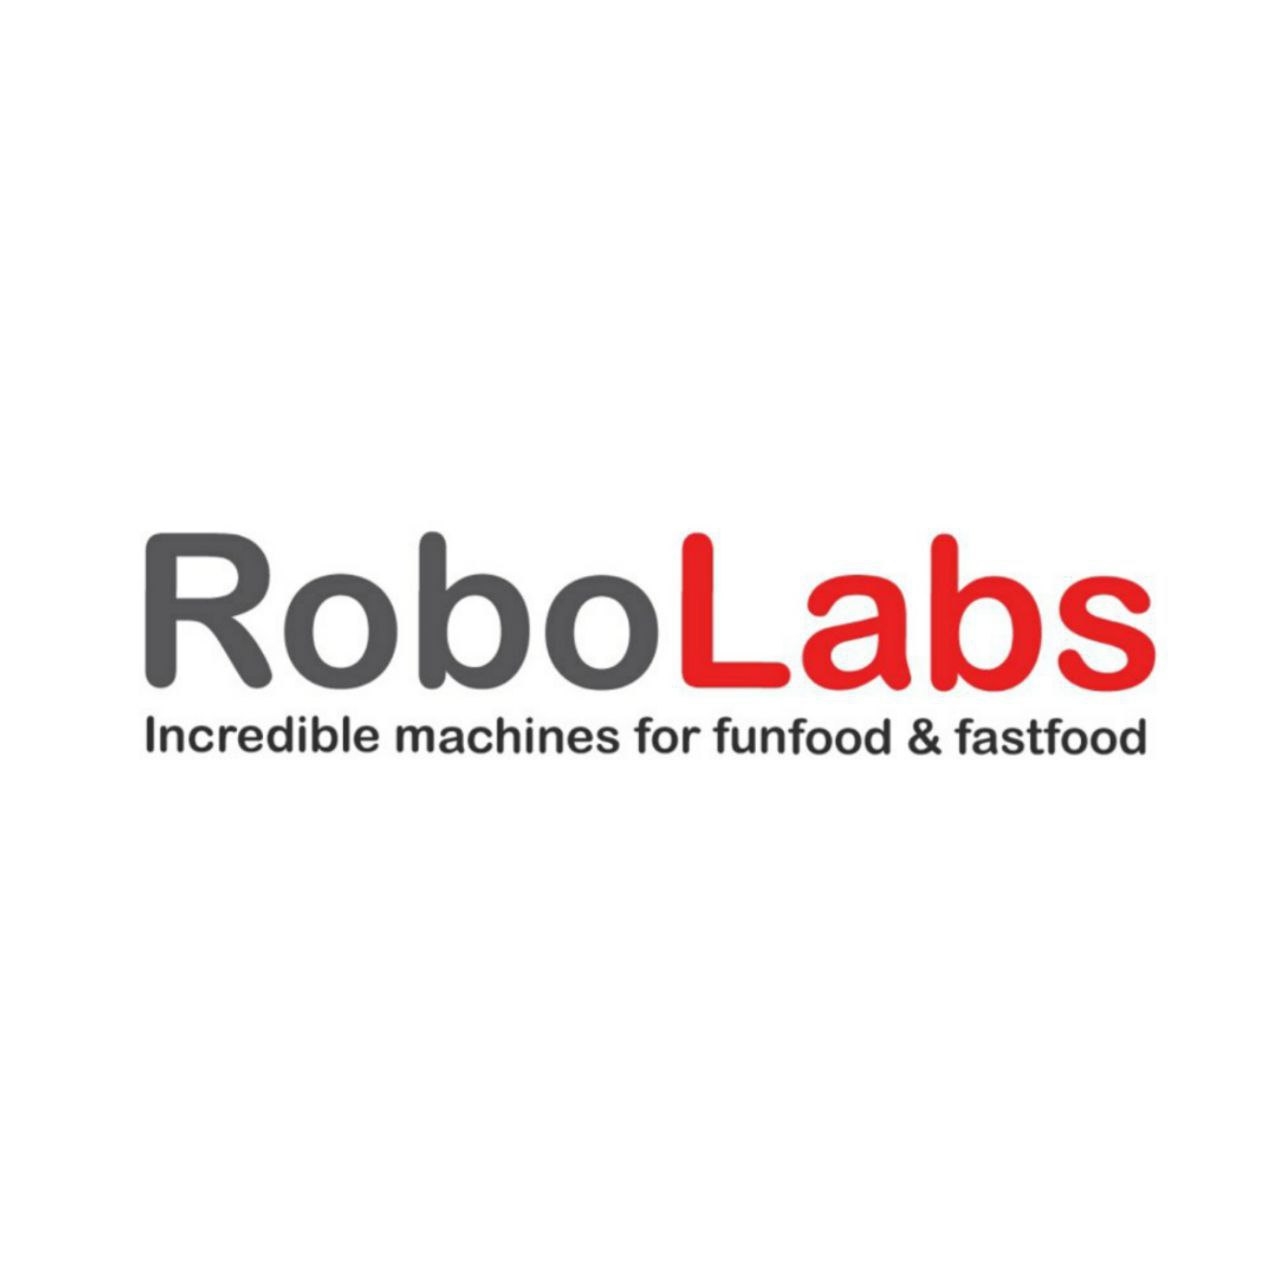 Поступление оборудования Robolabs на склад